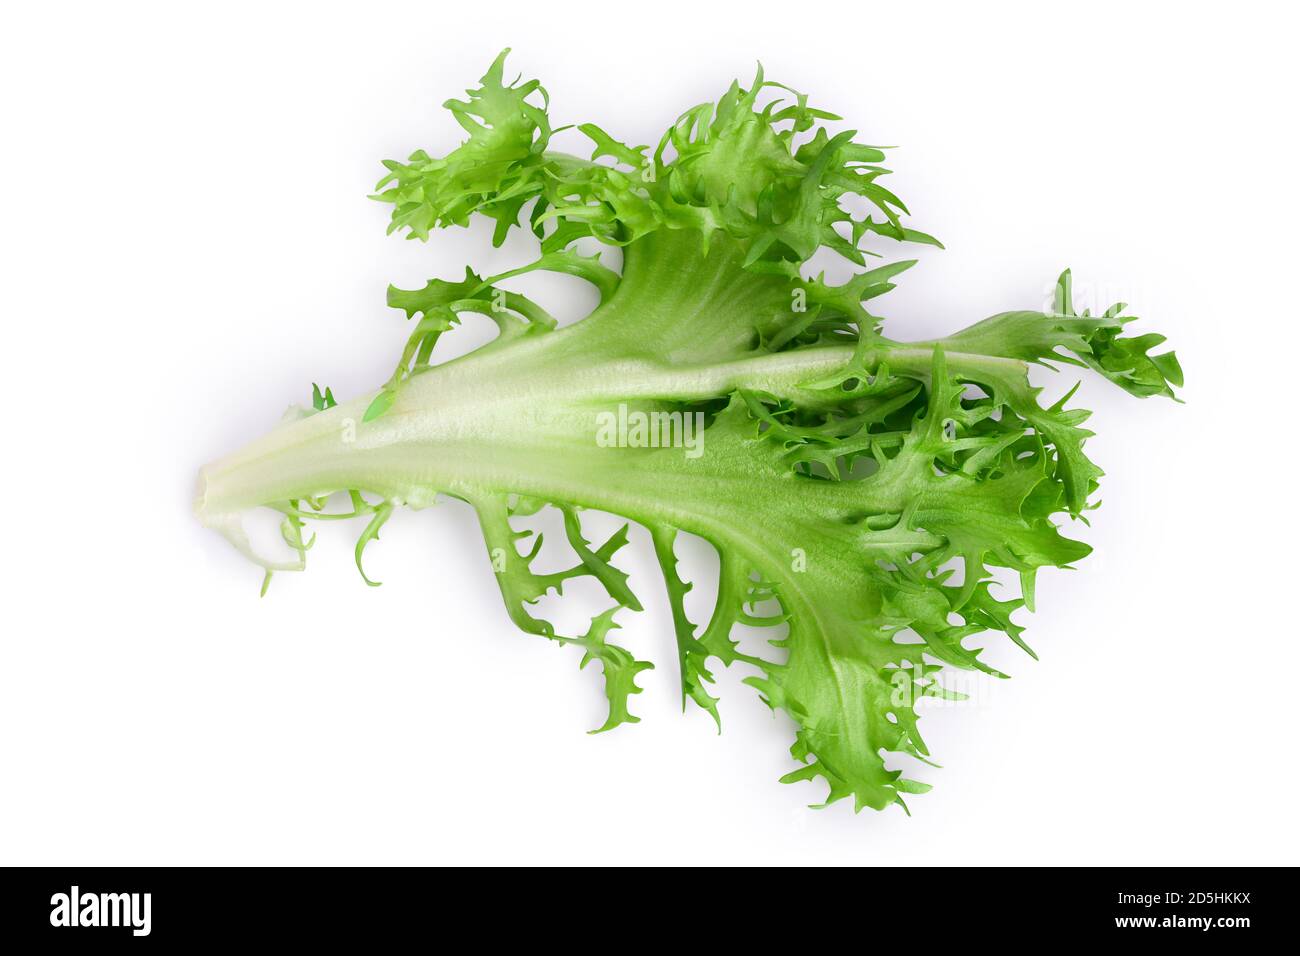 Frische grüne Blätter Endive Frisee Chicorée Salat isoliert auf weißem Hintergrund mit Clipping Pfad und volle Tiefe des Feldes. Draufsicht. Flach liegend Stockfoto